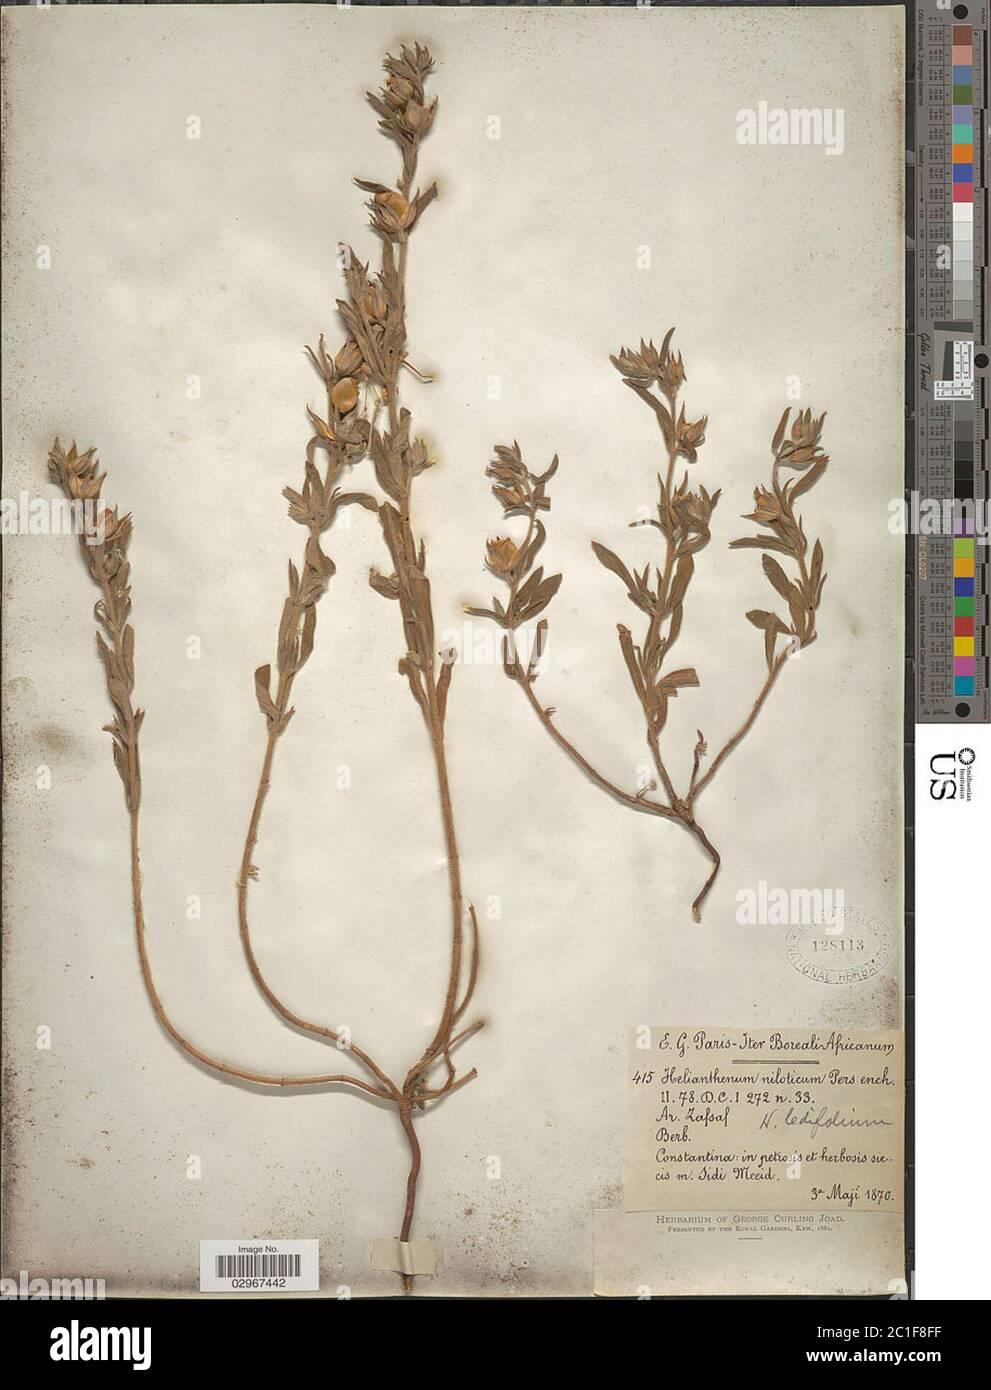 helianthemum-niloticum-helianthemum-niloticum-2C1F8FF.jpg